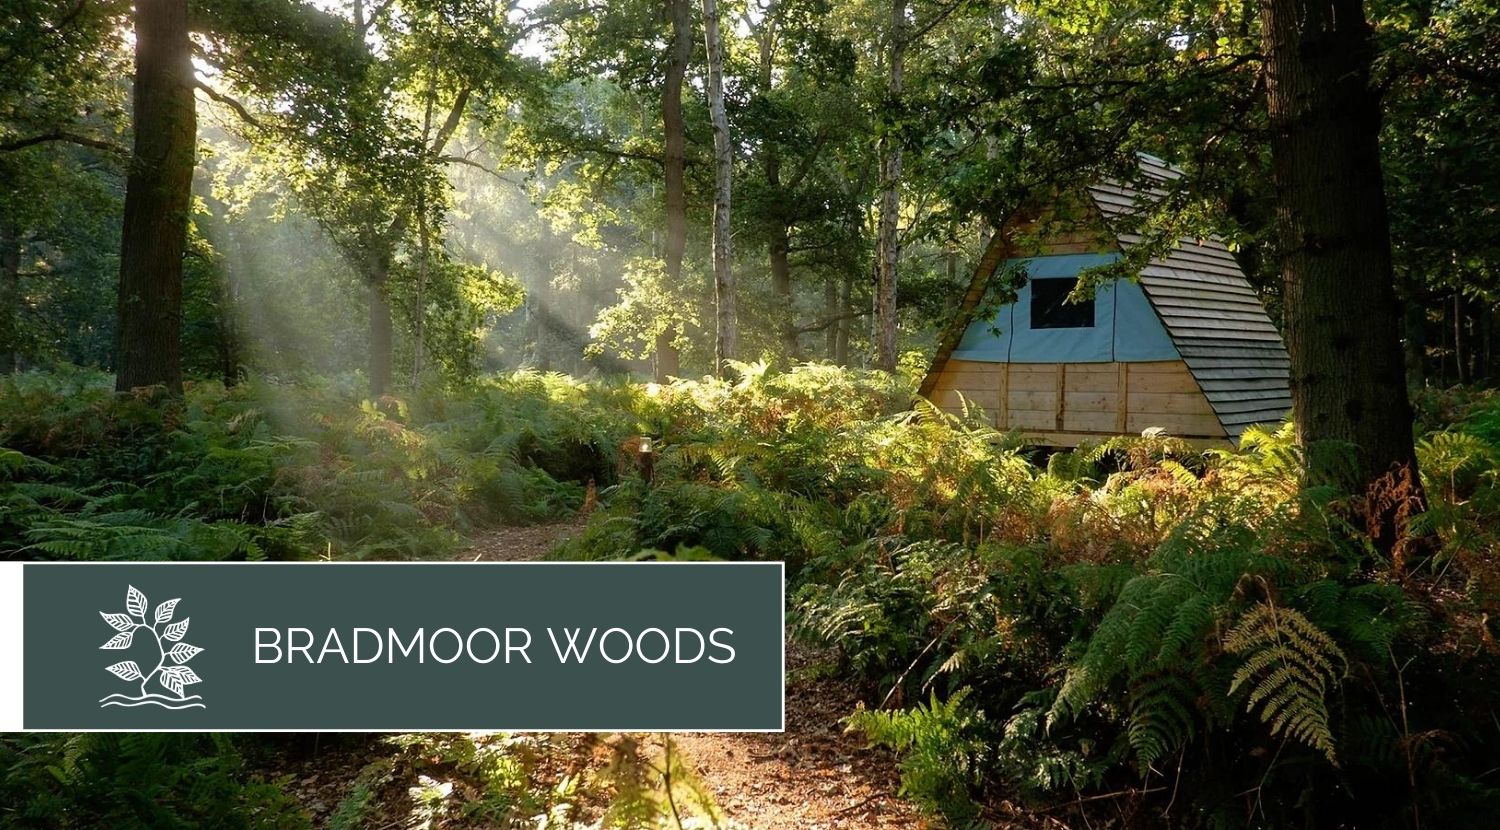 Bradmoor Woods